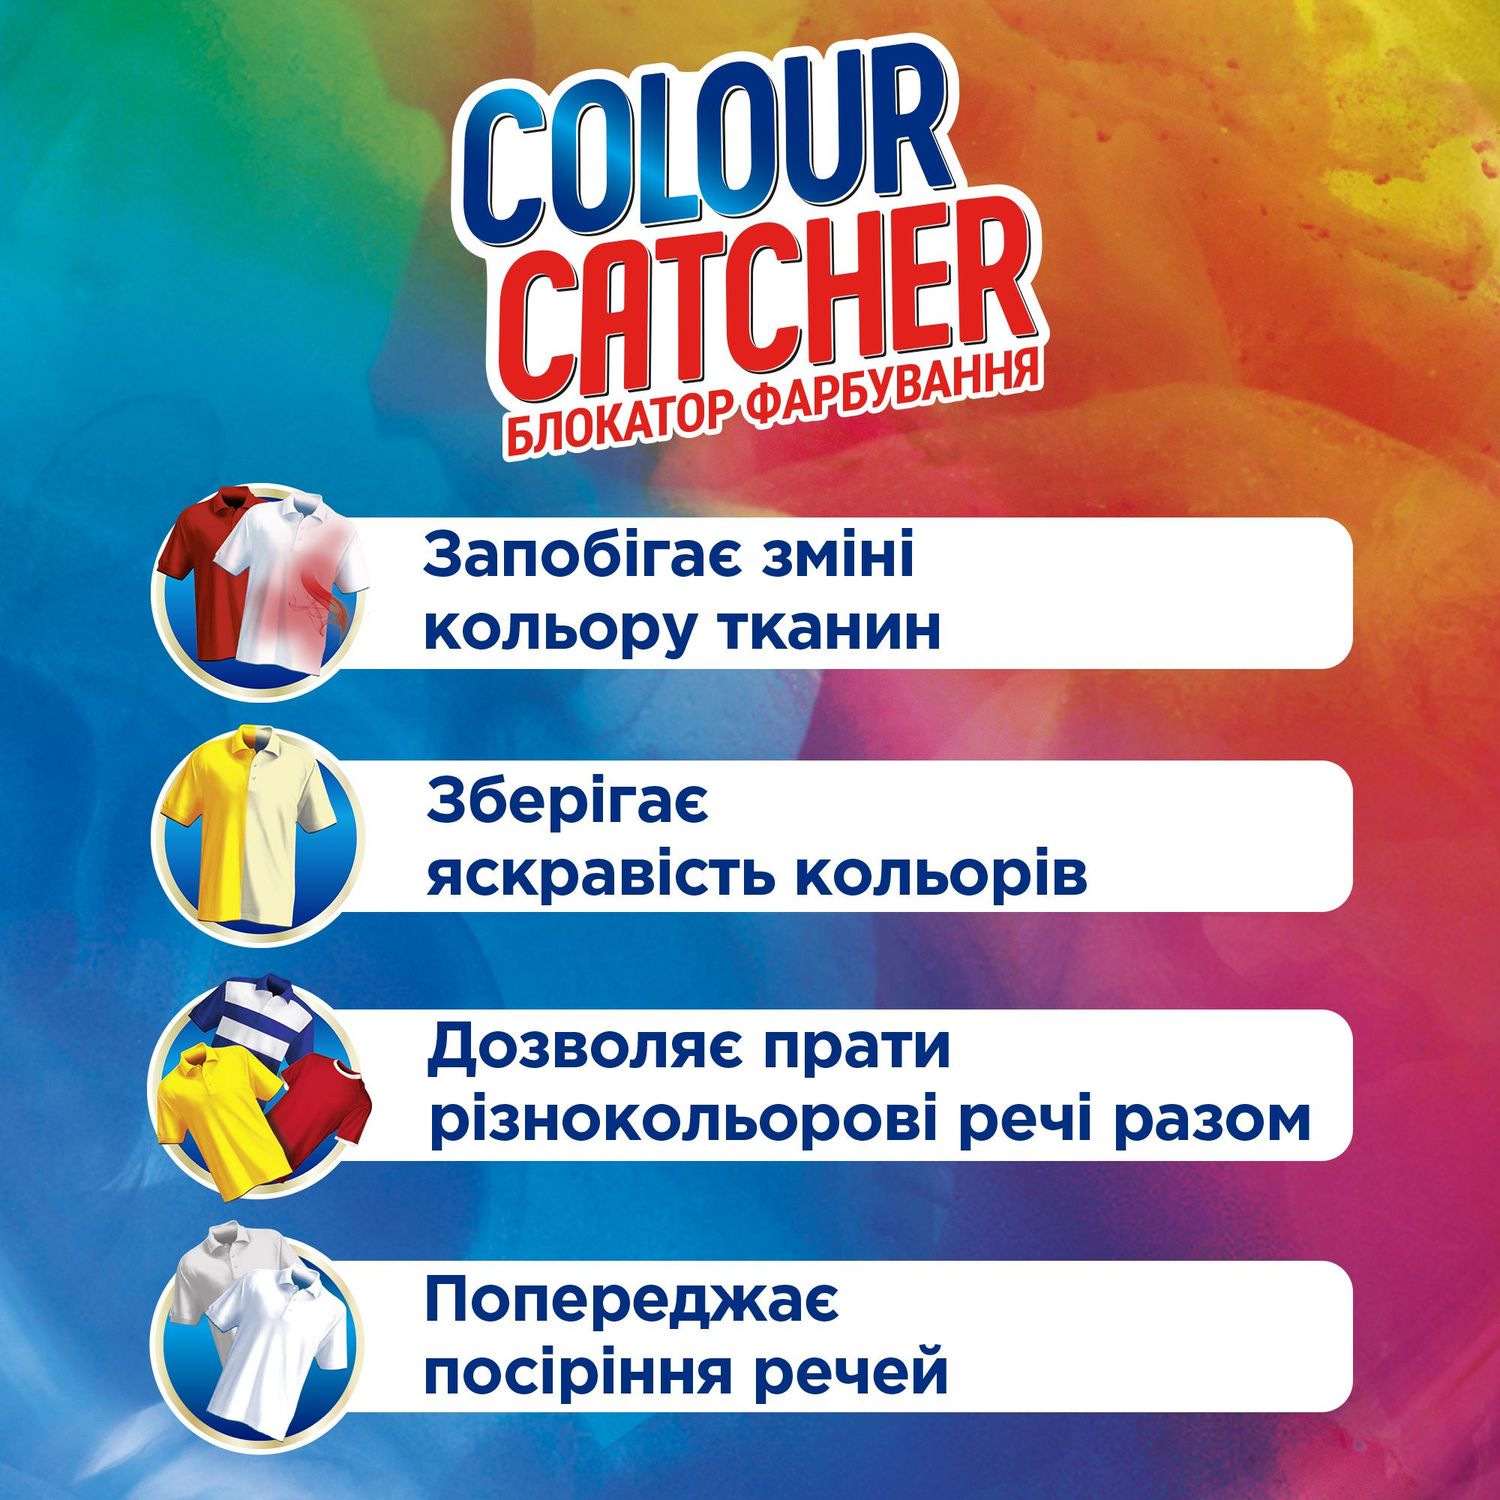 Салфетки для стирки K2r Colour Catcher цветопоглощение 20 шт. - фото 3